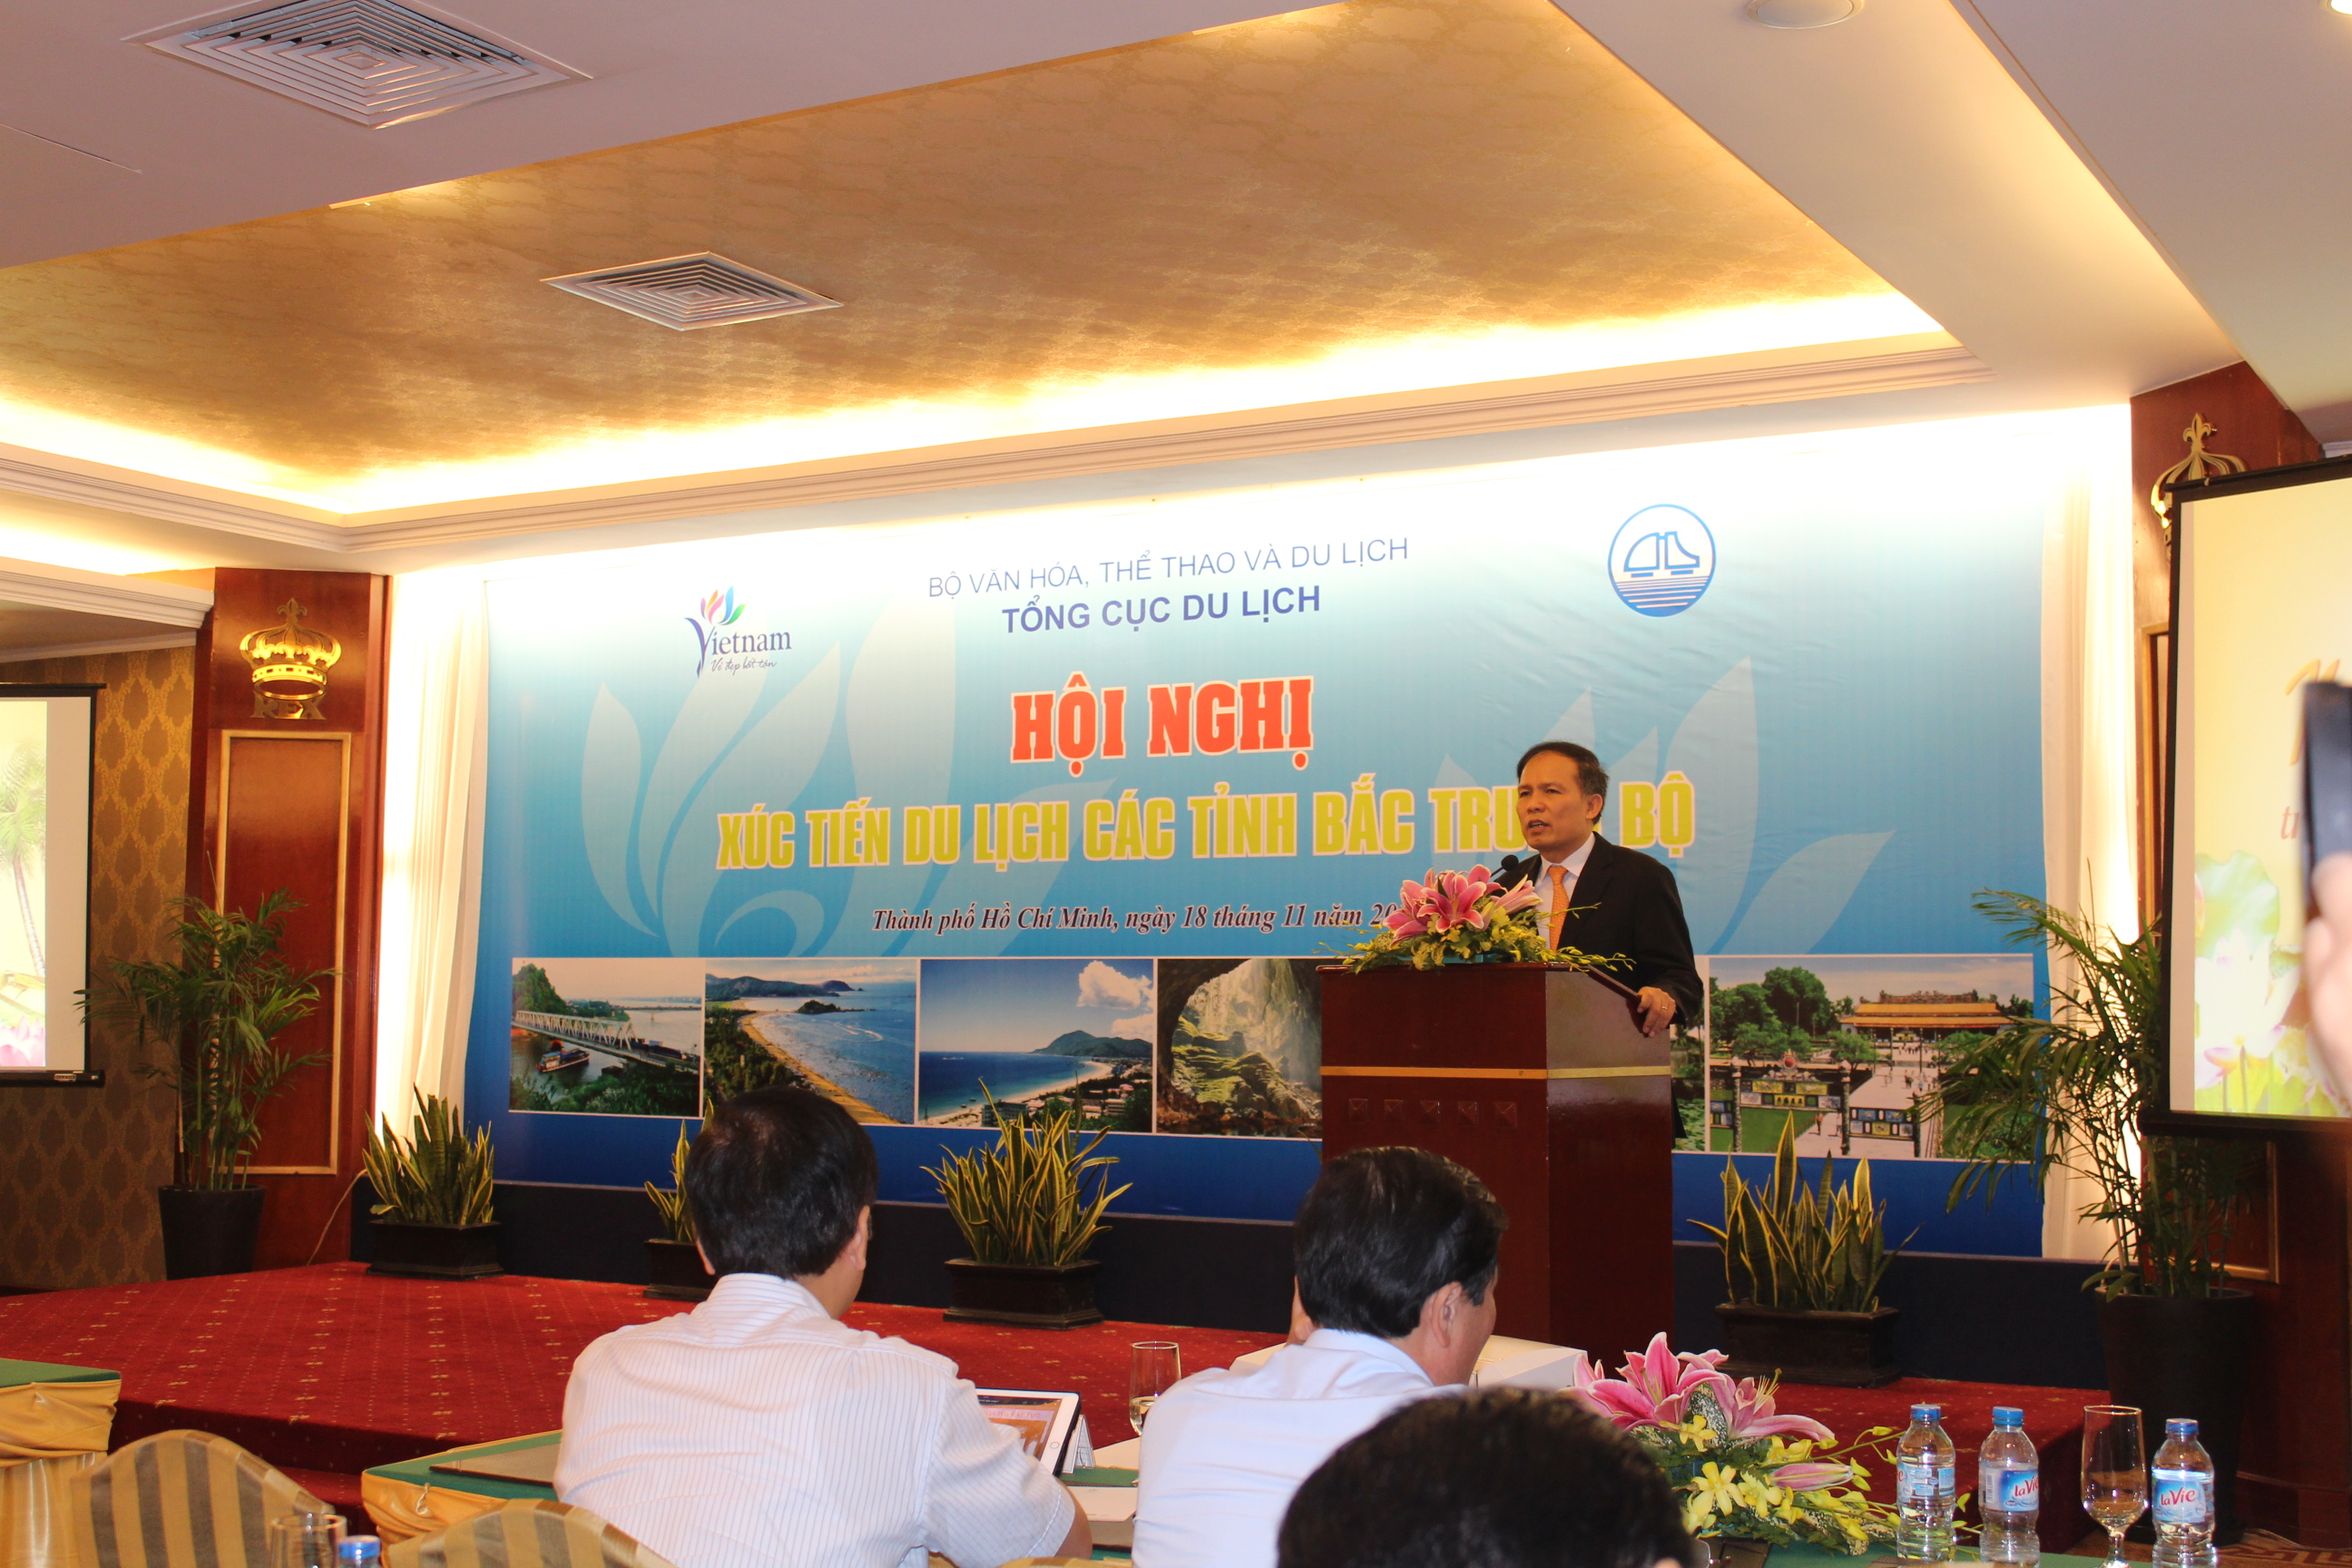 Hội nghị xúc tiến du lịch các tỉnh Bắc Trung Bộ tại TP. Hồ Chí Minh